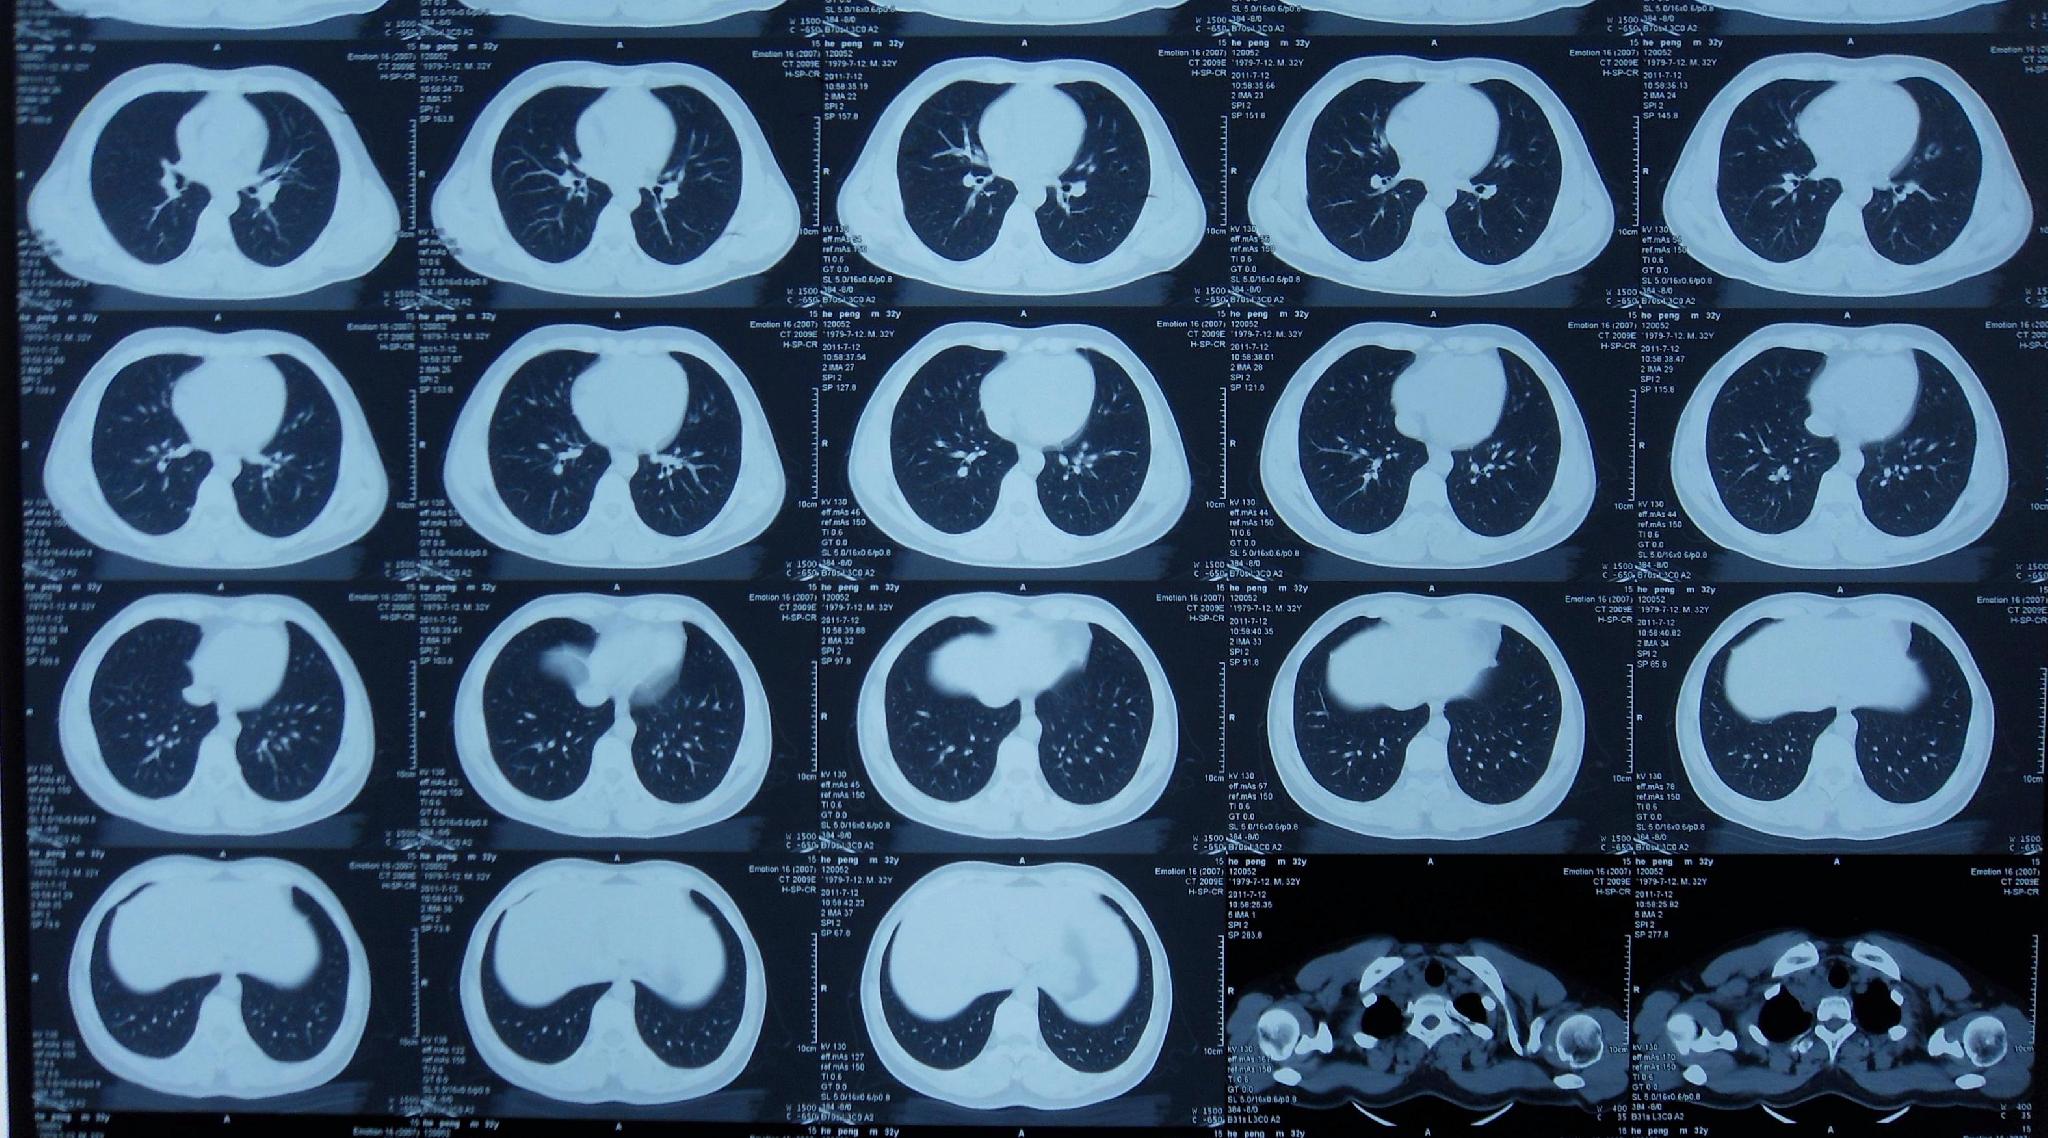 正常肺CT图片与病变CT图片